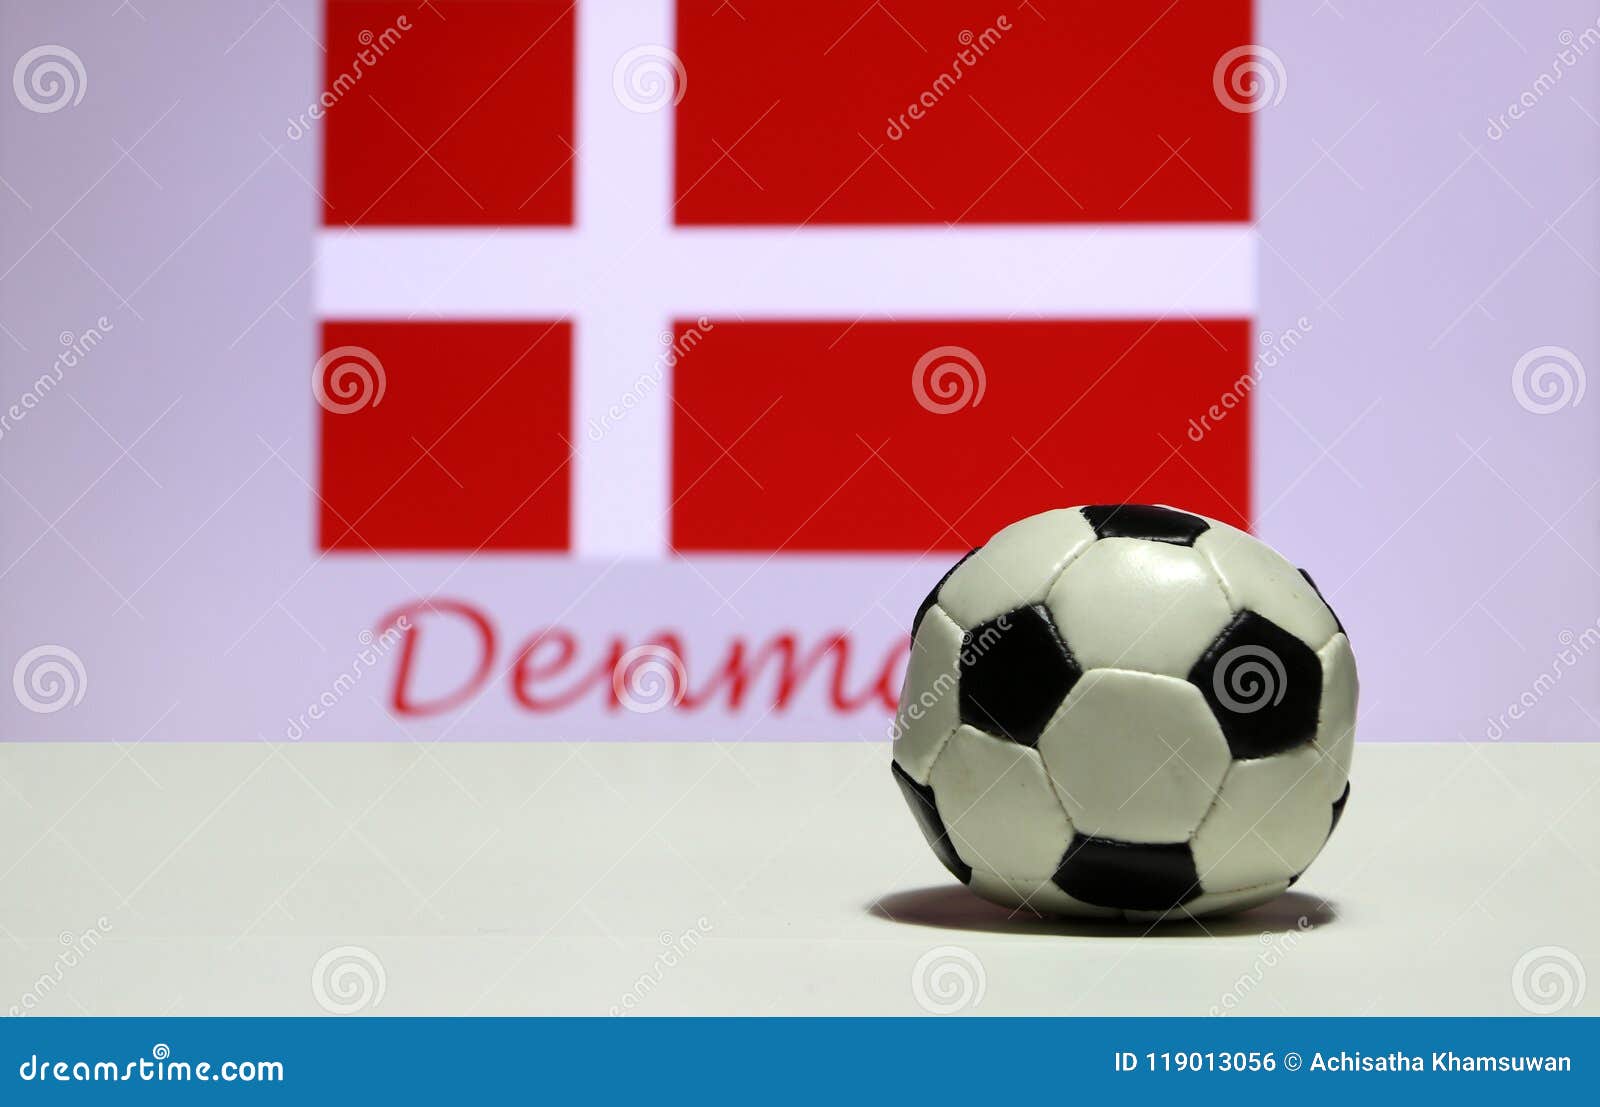 Bóng đá là môn thể thao phổ biến nhất trên thế giới, được coi là nơi quy tụ văn hóa và niềm tự hào quốc gia. Cờ trắng, dấu thập đỏ trên nền đỏ là biểu tượng của Thụy Sĩ, tuy nhiên trên đống dịch bệnh dịch Covid-19 vẫn diễn ra các trận đấu. Hình ảnh của bóng đá sẽ cho bạn cảm giác hồn nhiên và tưng bừng.